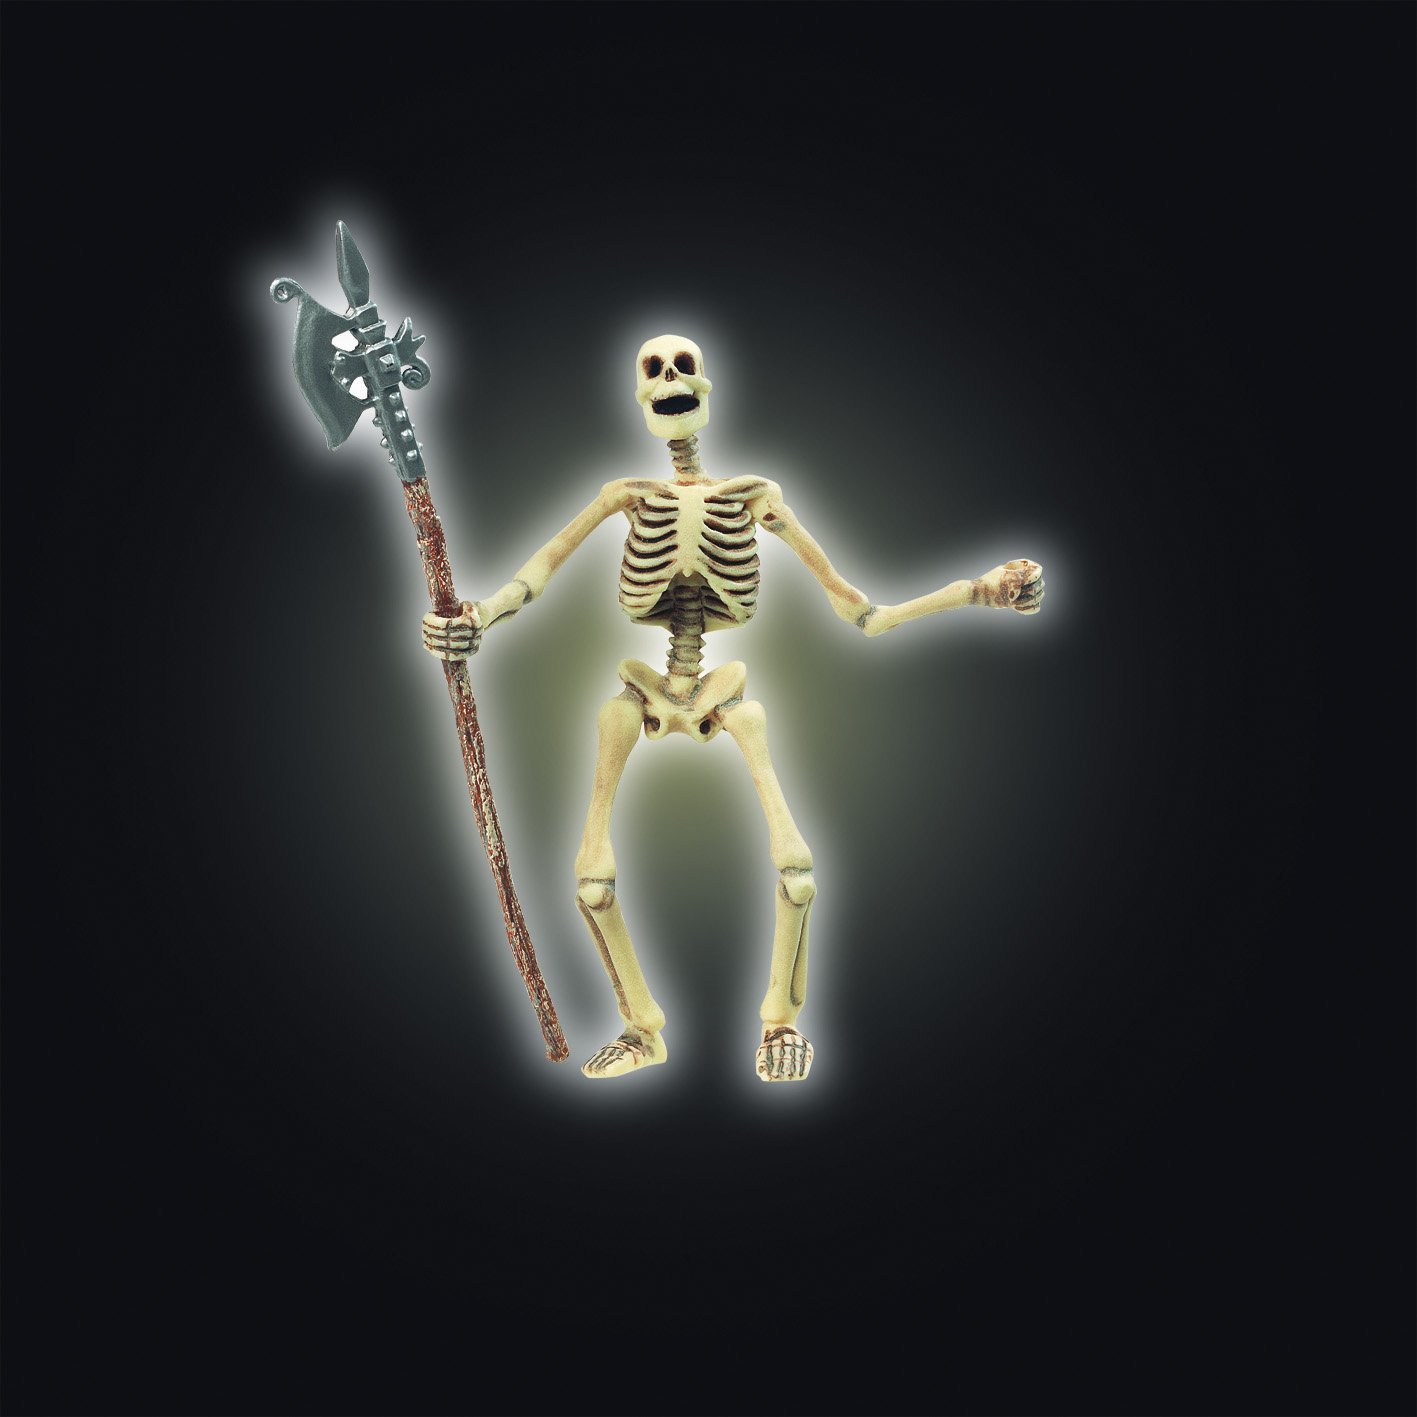 Skeleton by Papo